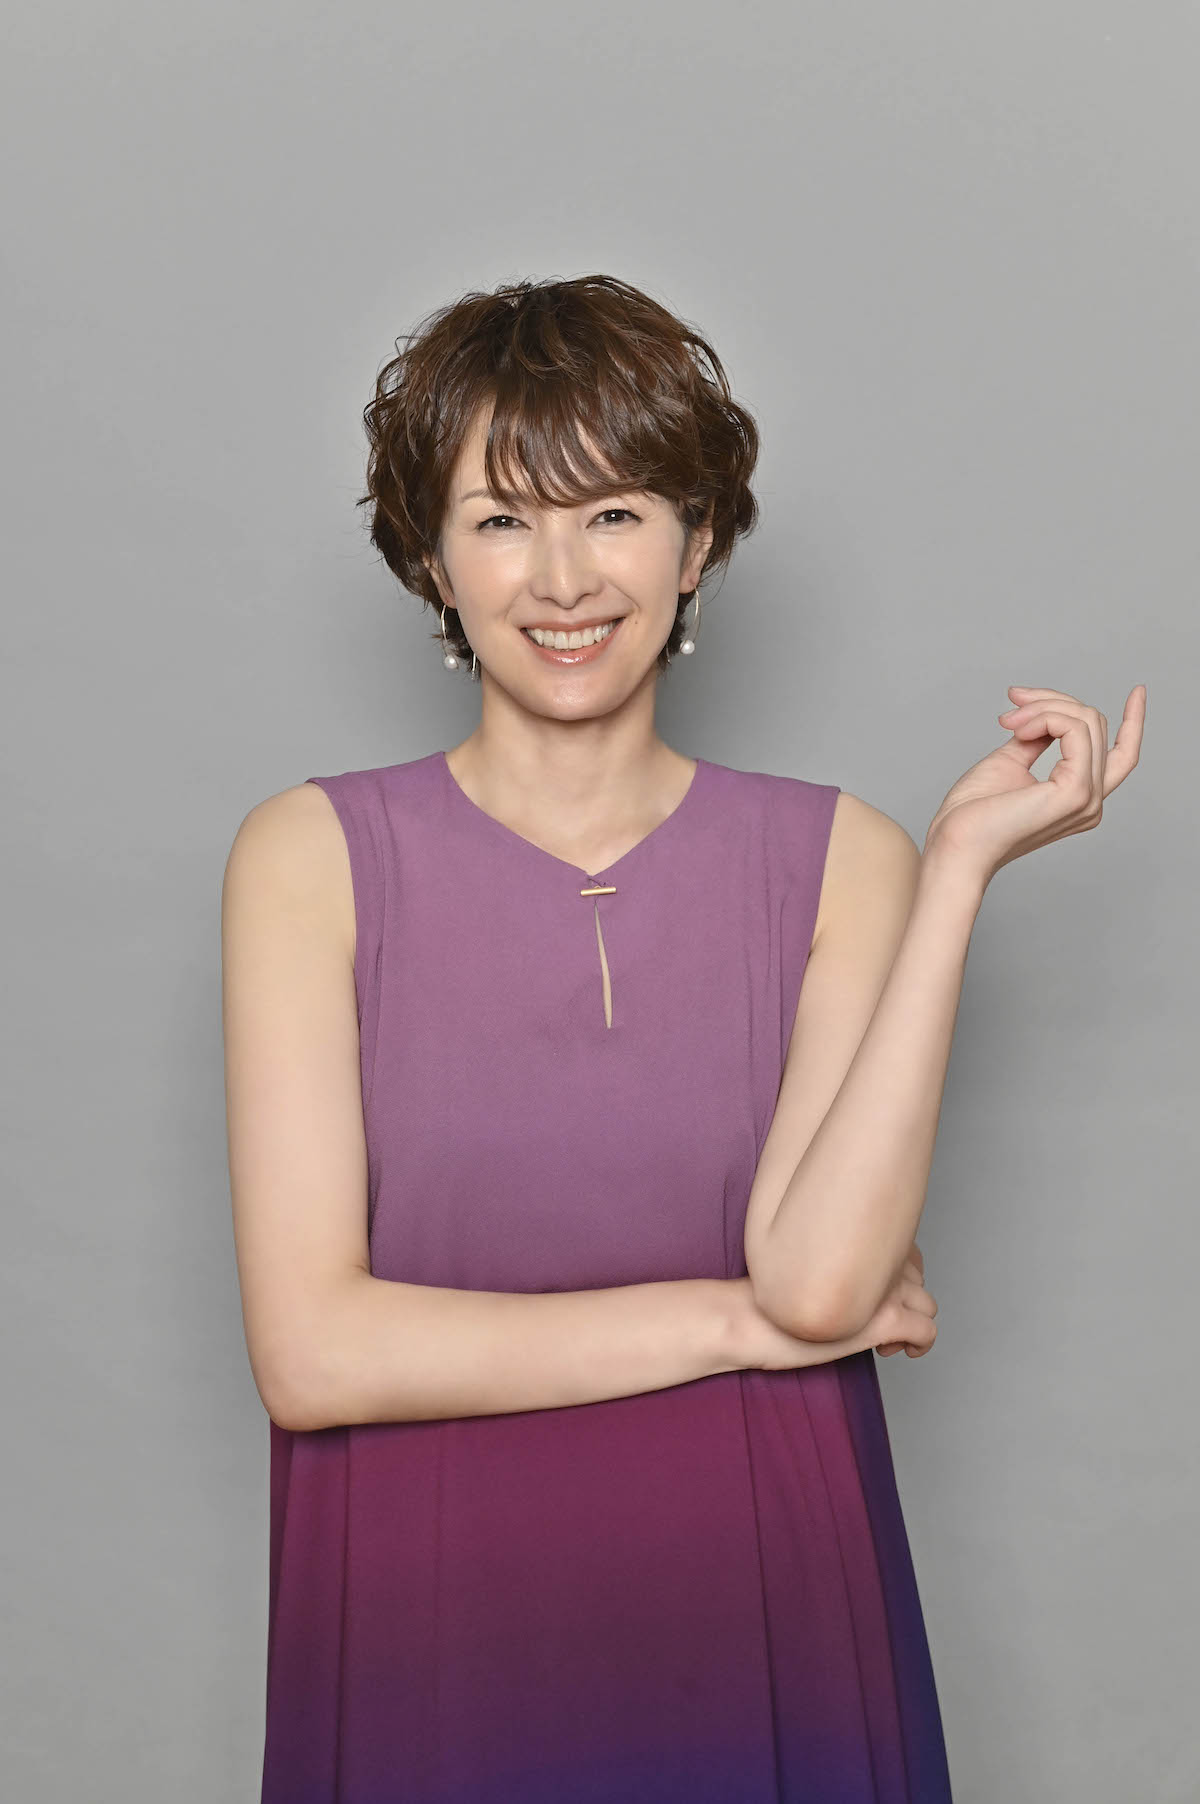 『うち弁』で吉瀬美智子がムロツヨシと初共演